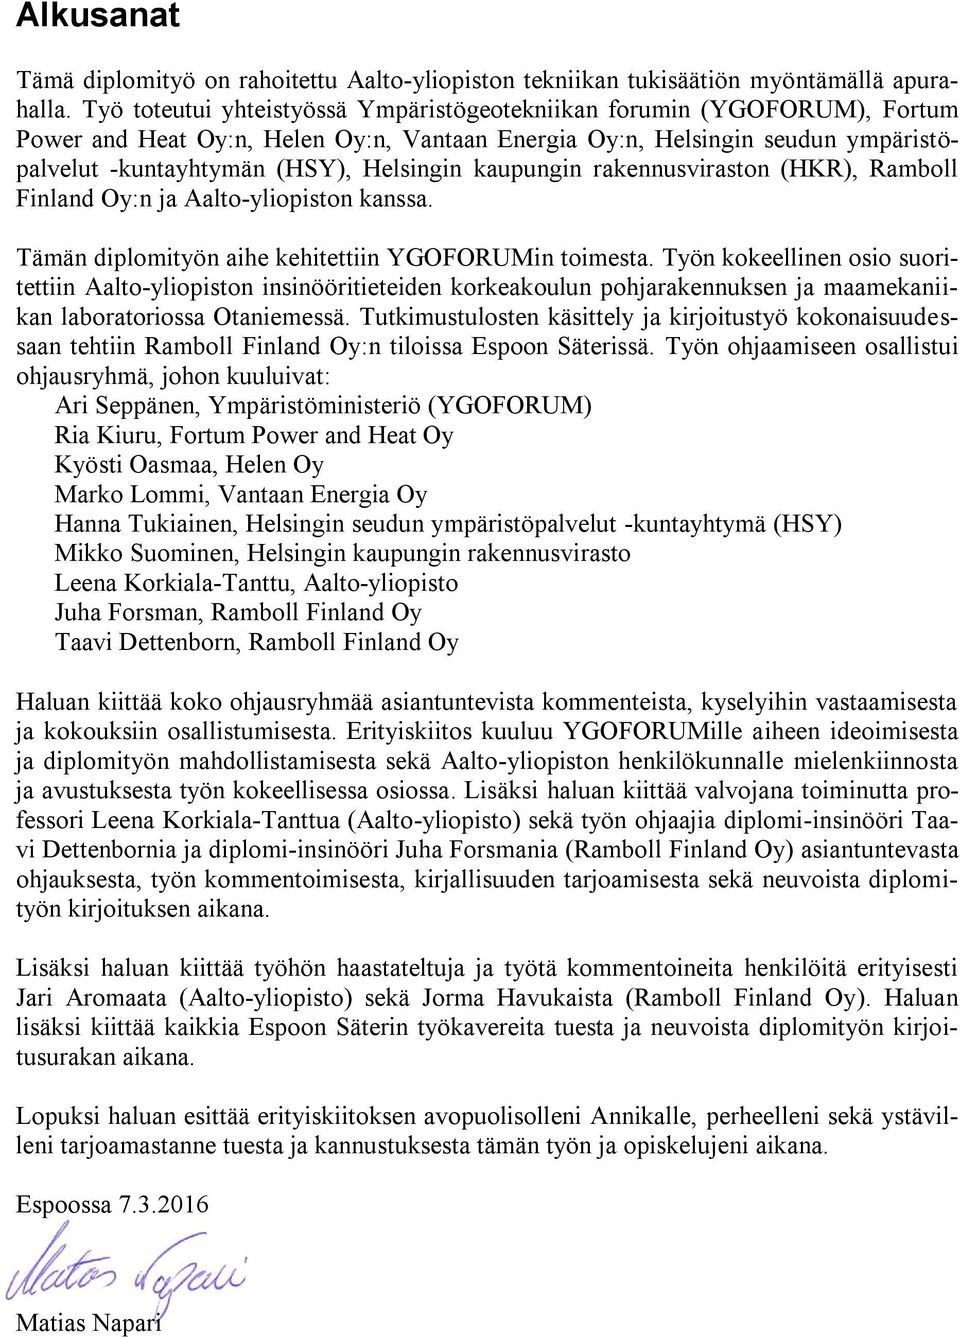 kaupungin rakennusviraston (HKR), Ramboll Finland Oy:n ja Aalto-yliopiston kanssa. Tämän diplomityön aihe kehitettiin YGOFORUMin toimesta.